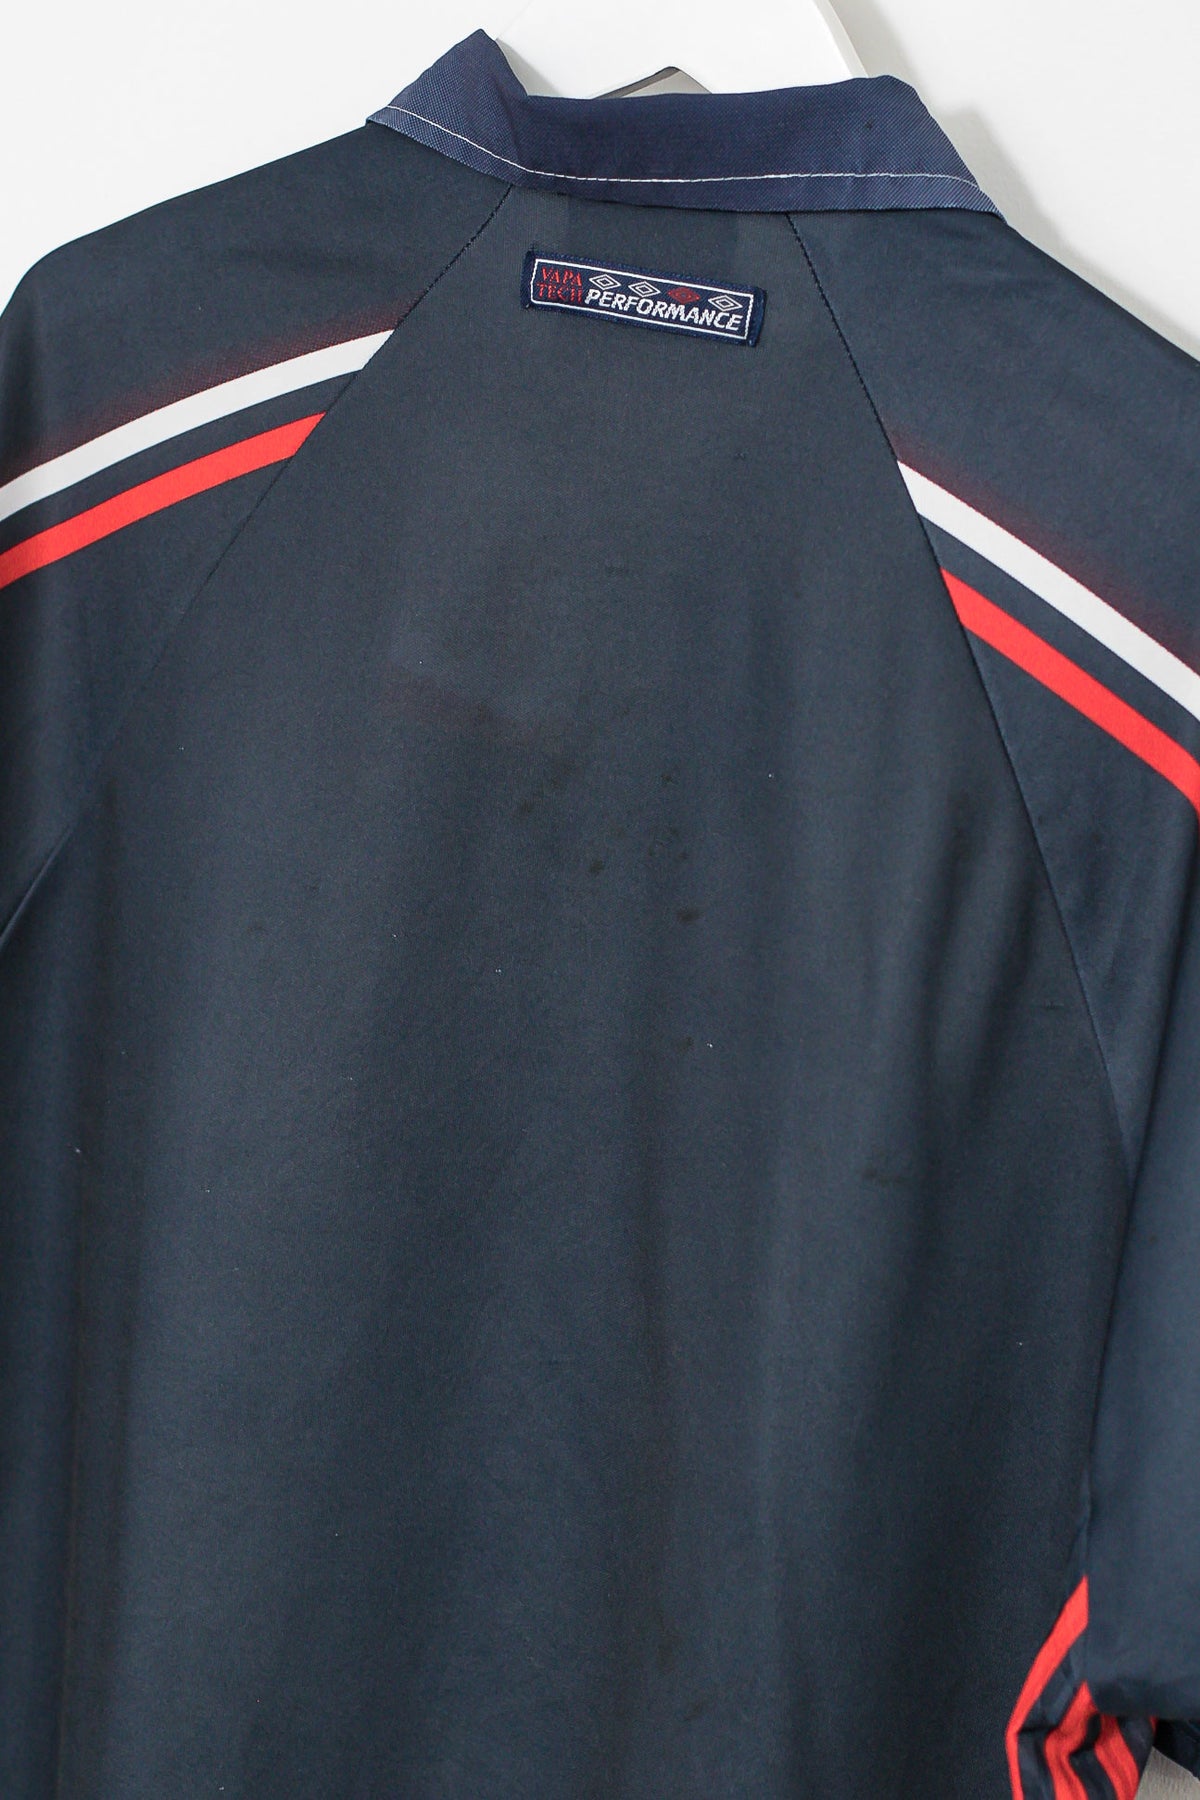 Umbro 1997/98 Ajax Away Shirt (L)